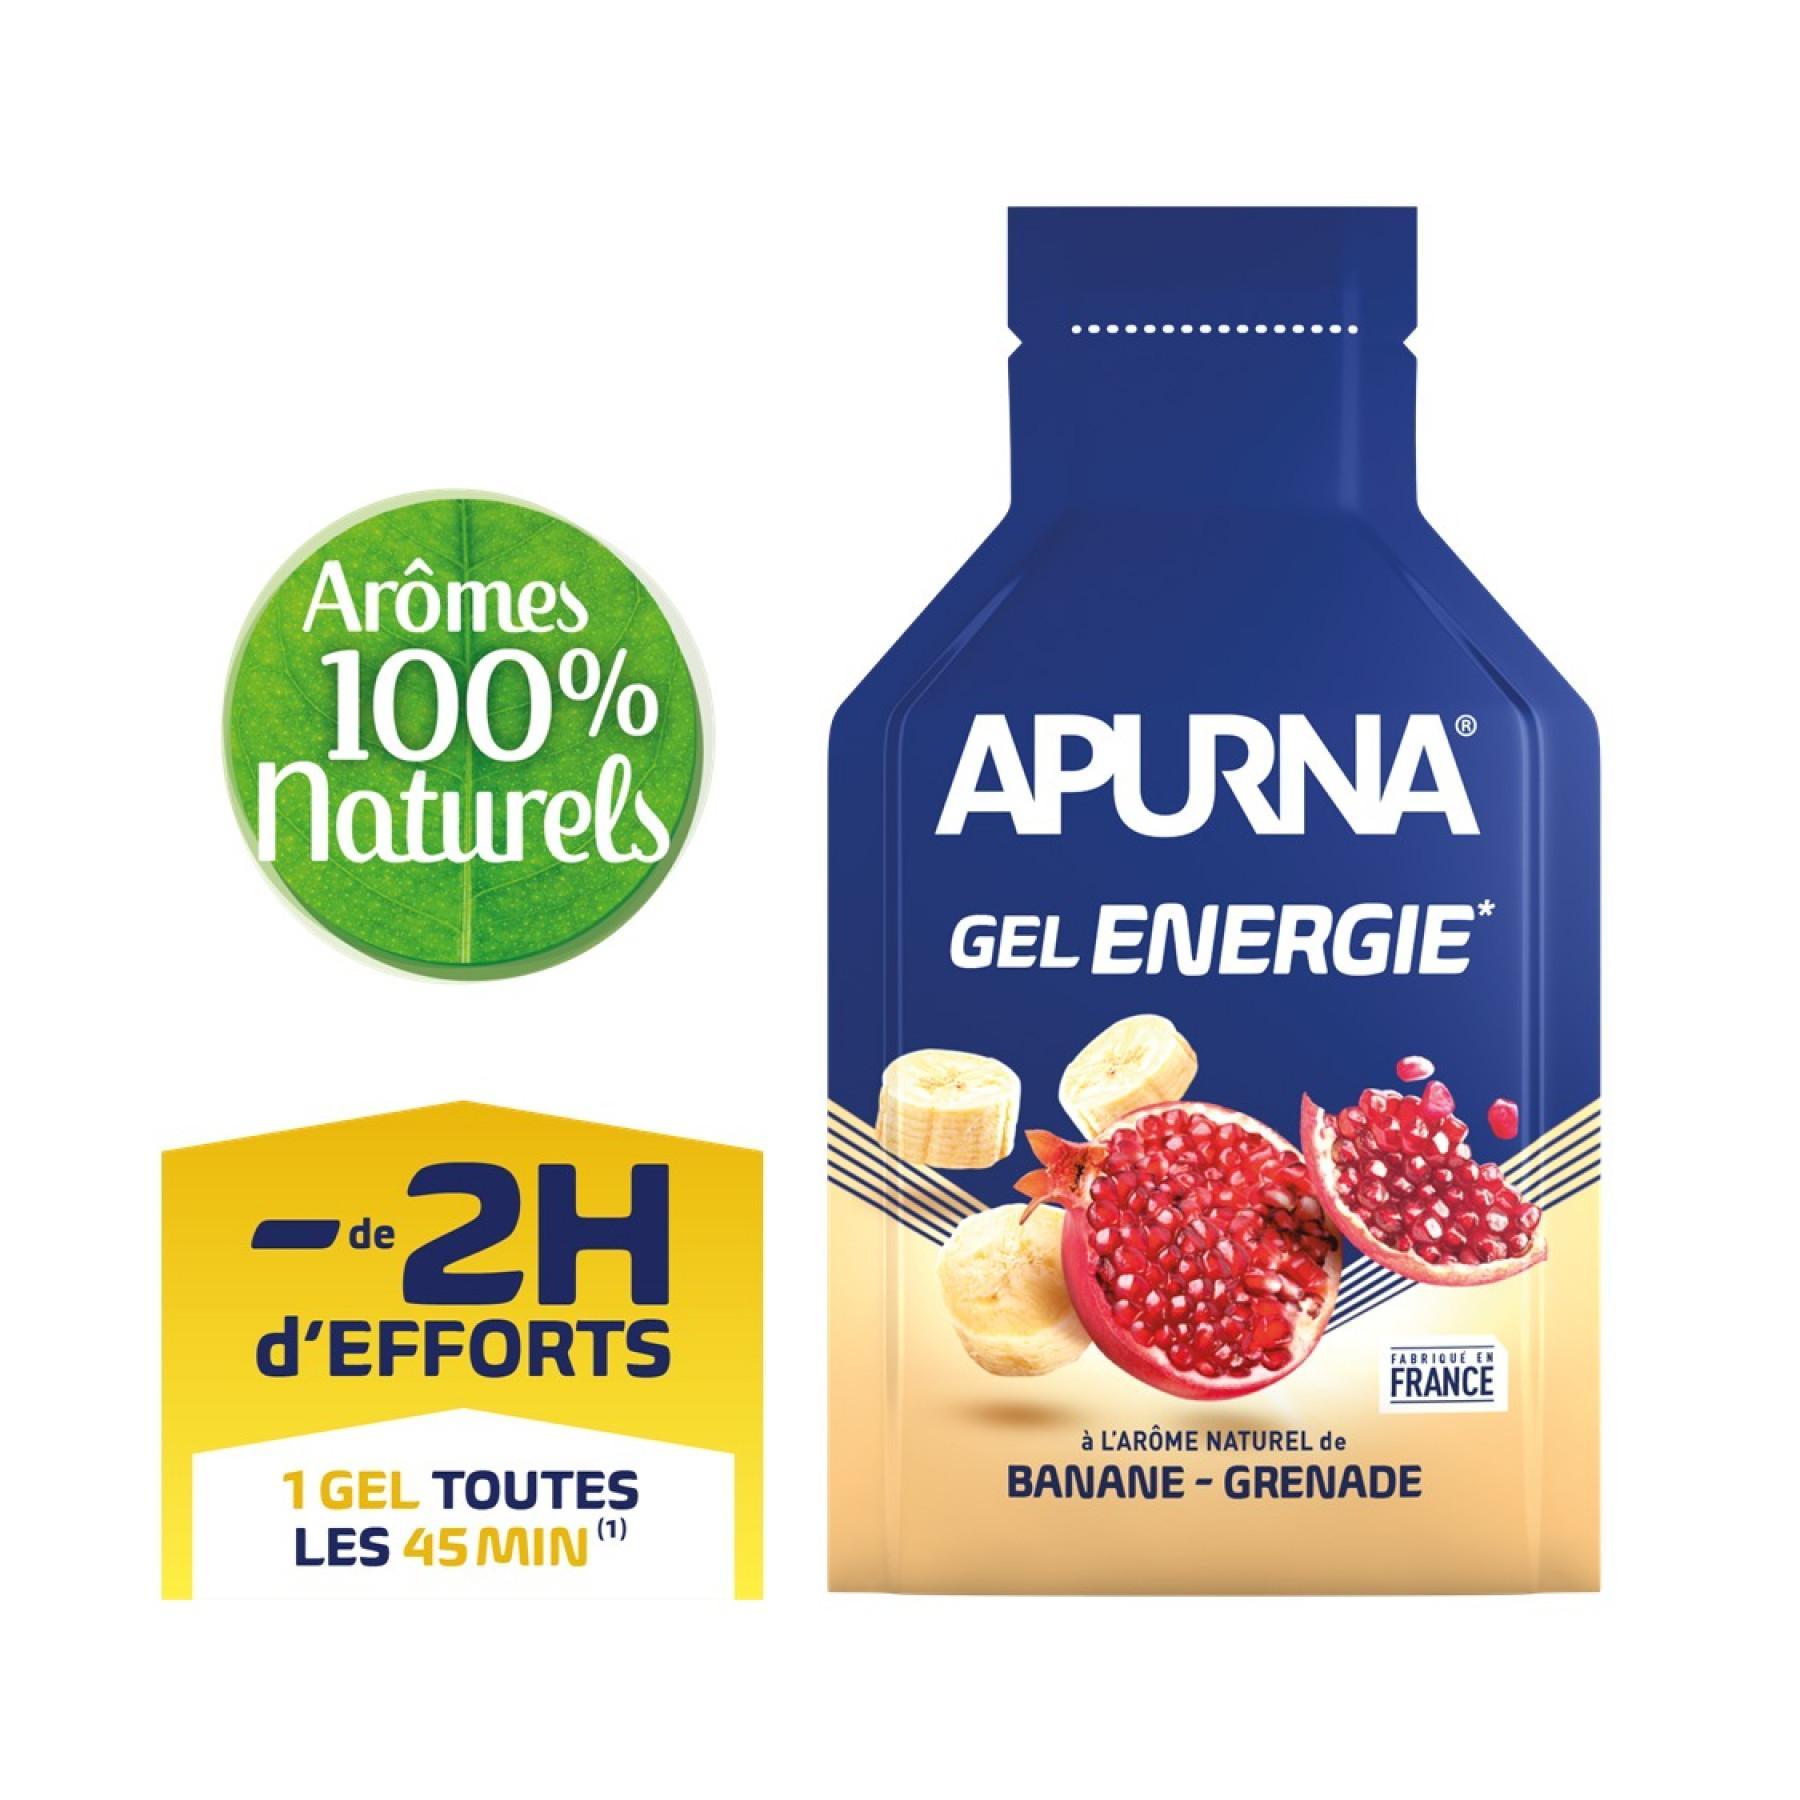 Batch of 24 gels Apurna Energie banane grenade - 35g